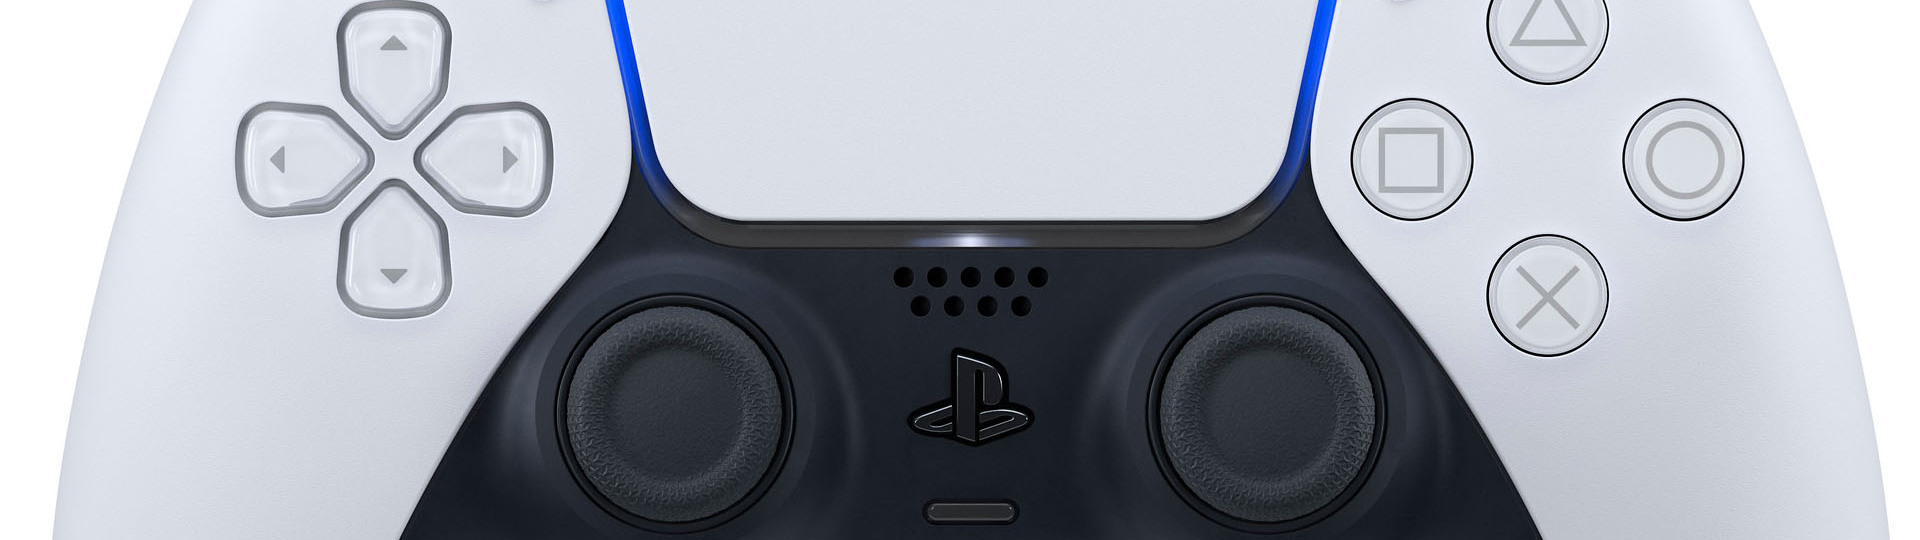 Nový update pro PS5 aktualizuje také ovladač DualSense | Novinky